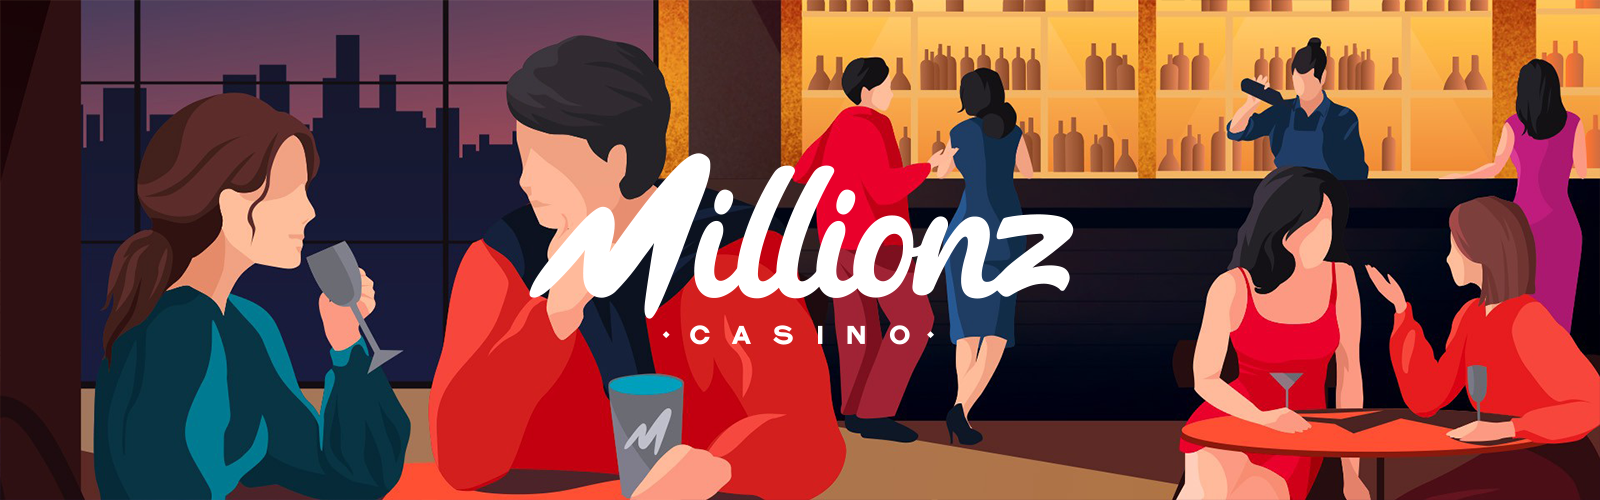 bonus Millionz casino